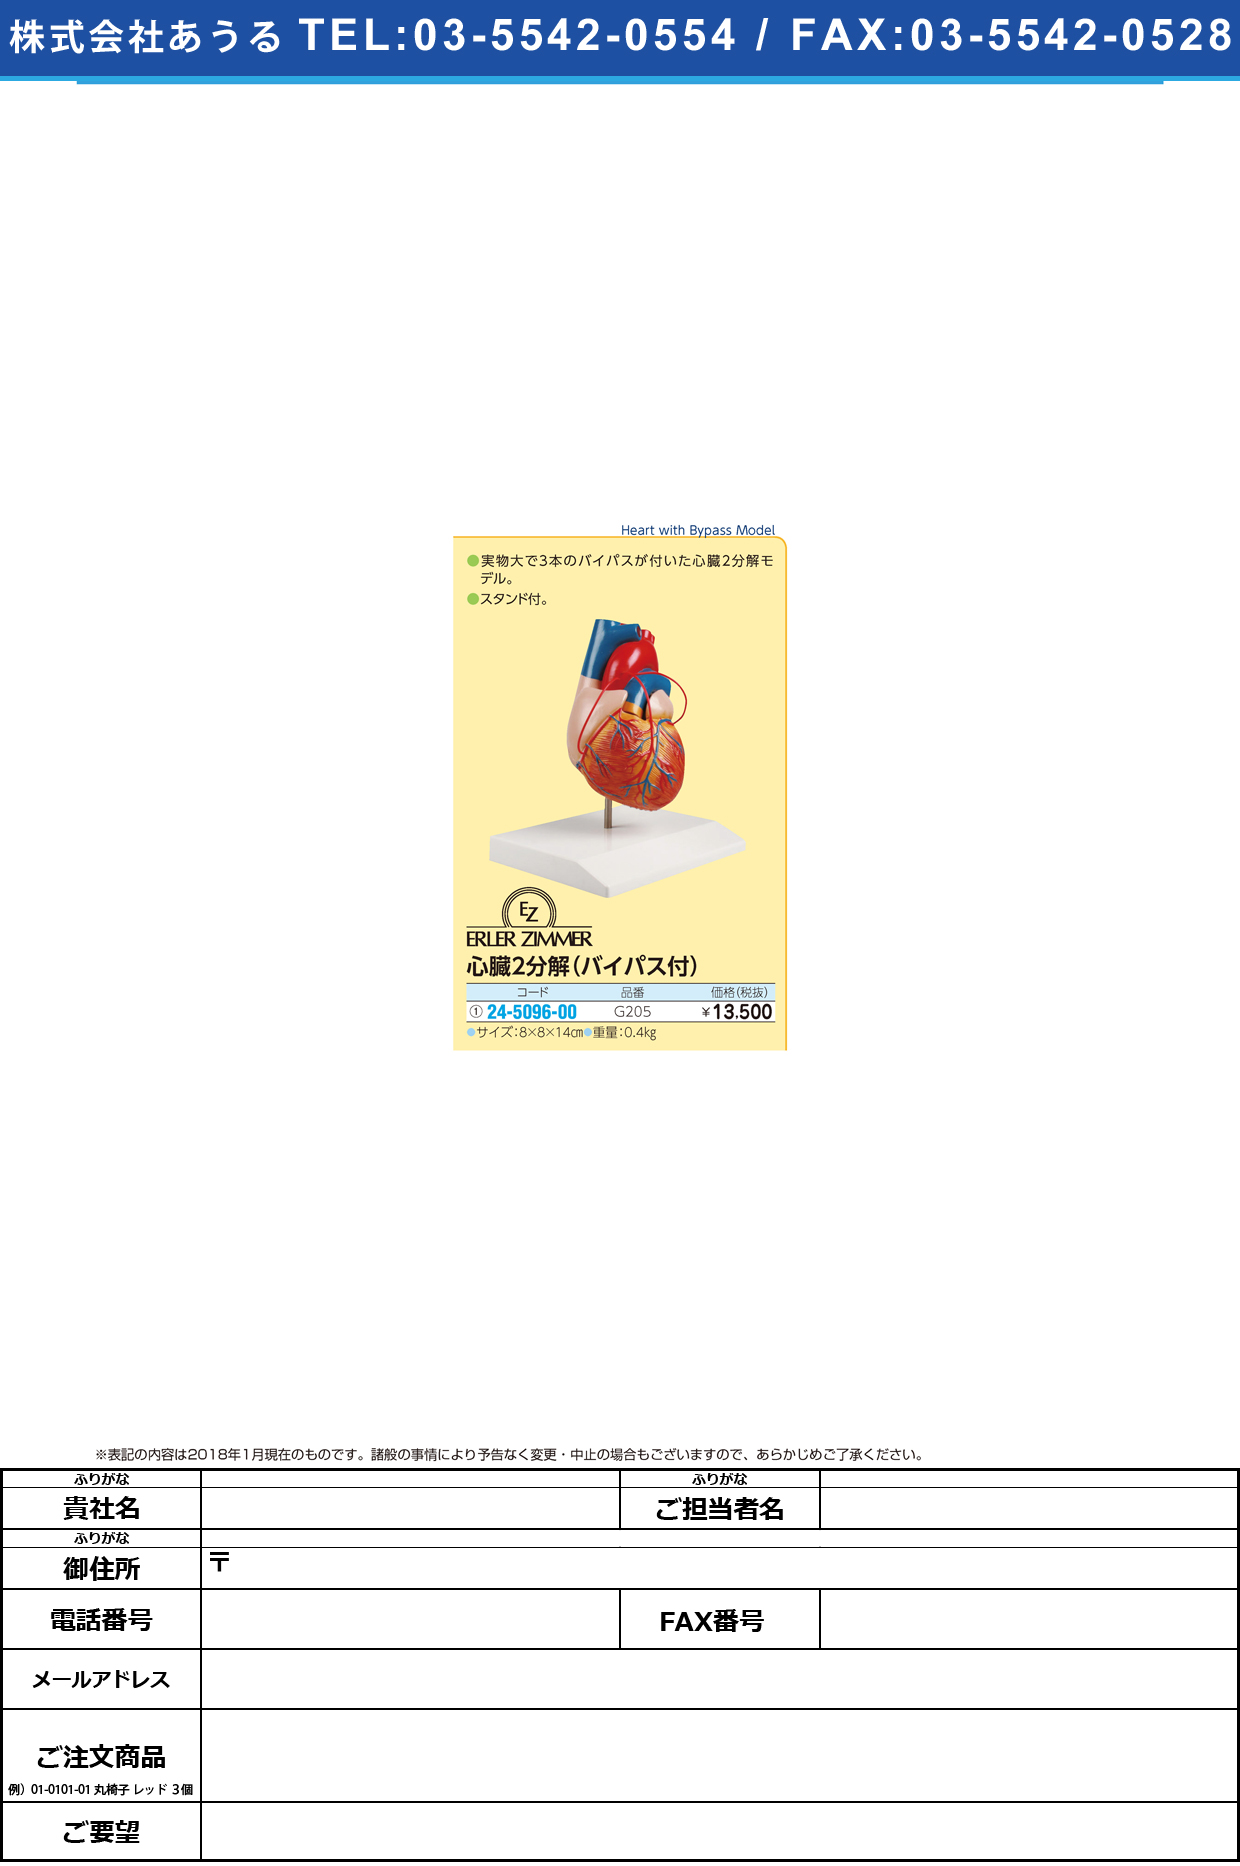 (24-5096-00)心臓２分解モデル（バイパス付） G205 ｼﾝｿﾞｳ2ﾌﾞﾝｶｲﾓﾃﾞﾙ(エルラージーマー社)【1個単位】【2018年カタログ商品】